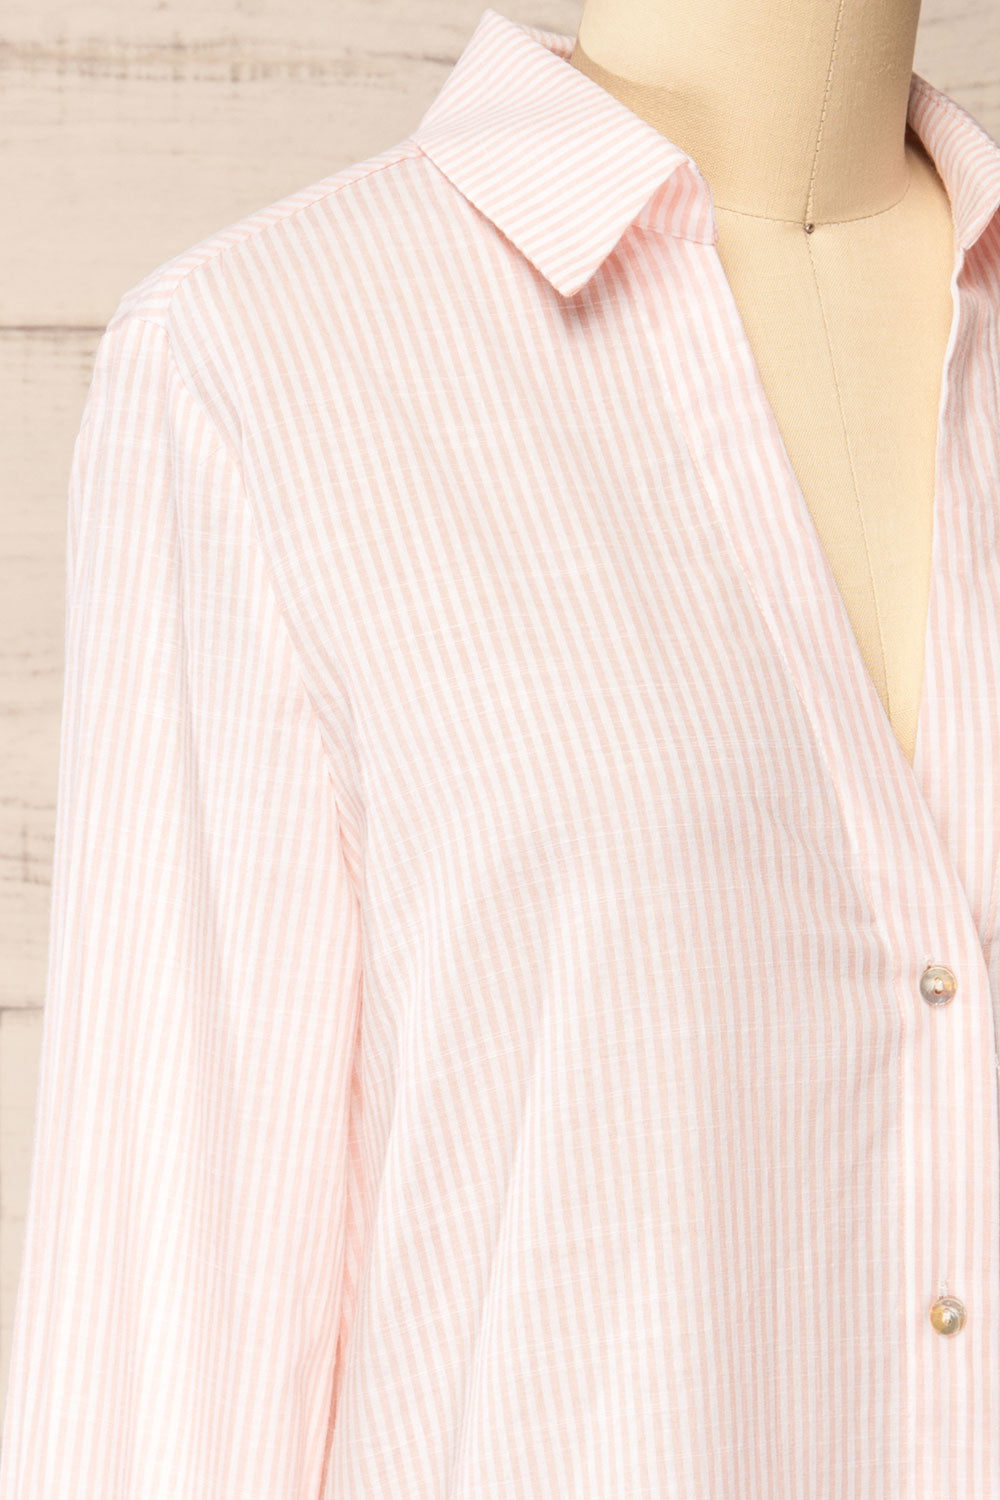 Stannard Long Pink Striped Shirt | La petite garçonne side